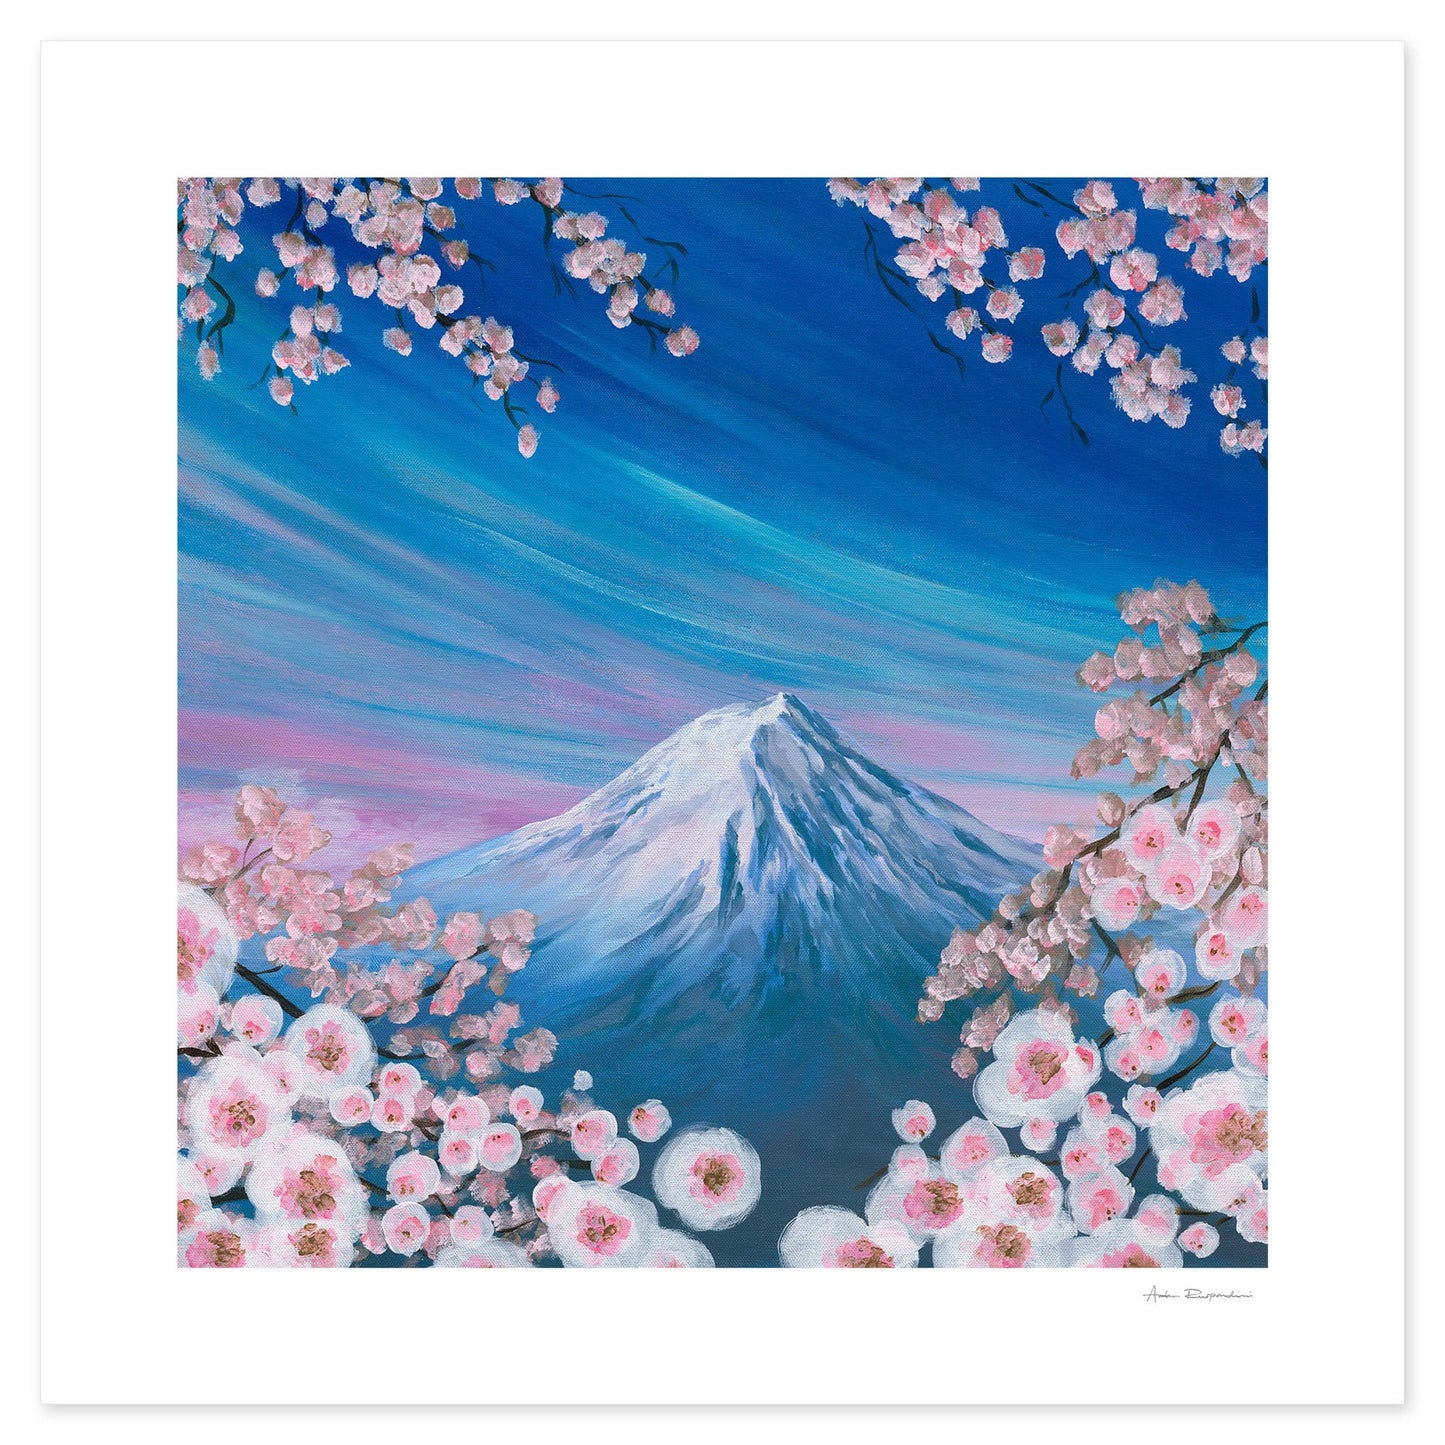 Mount Fuji Japan - Print Options - Adam Ruspandini